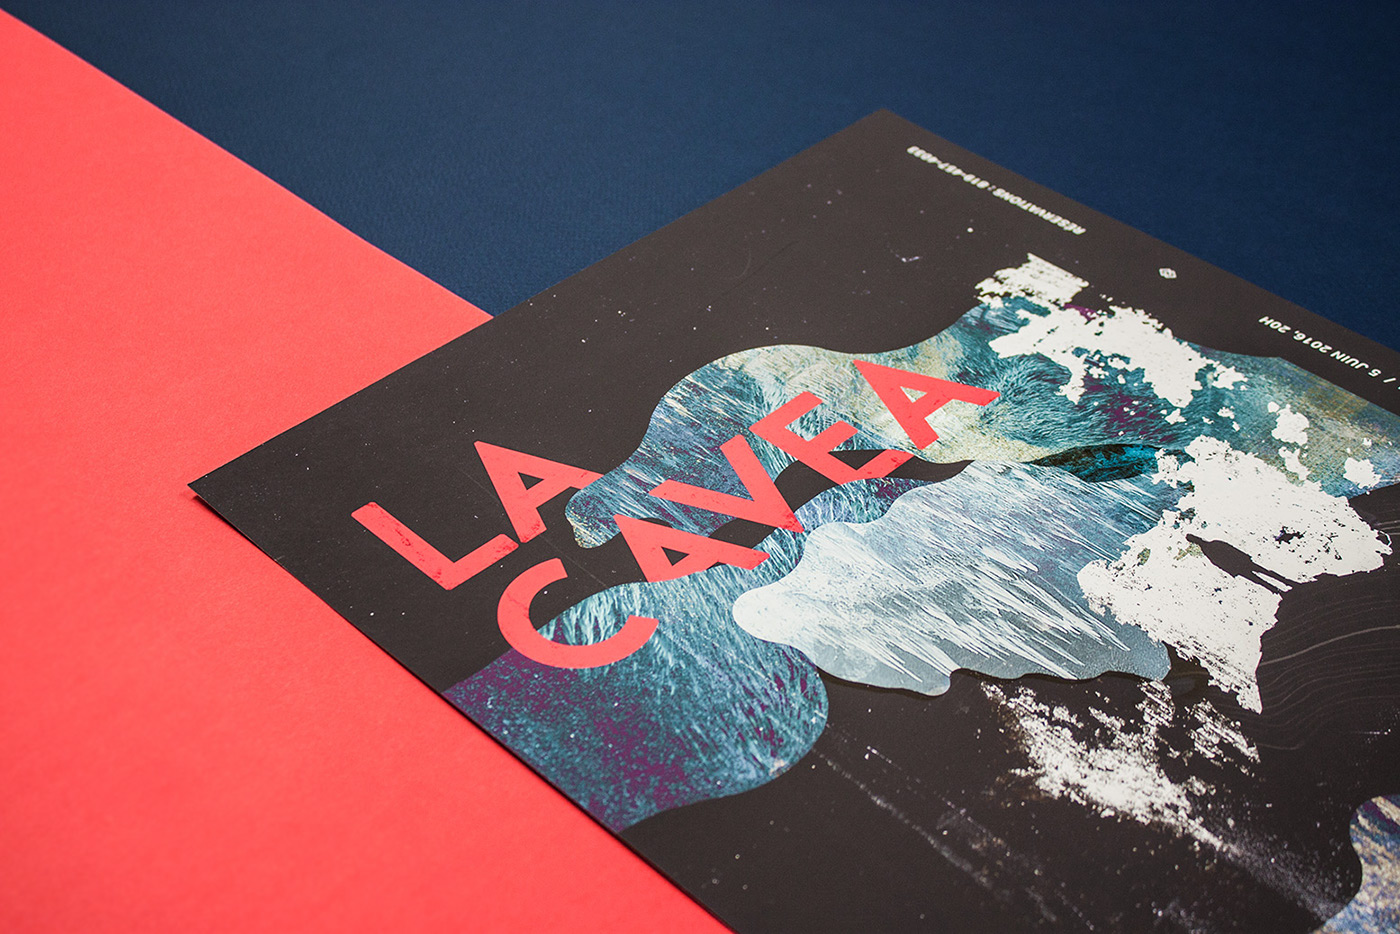 #collage #LaCavea #affiche #print #Poster #event   #publication #Caverne Laflèche #editorial #Art Direction #illustration #editorial design 